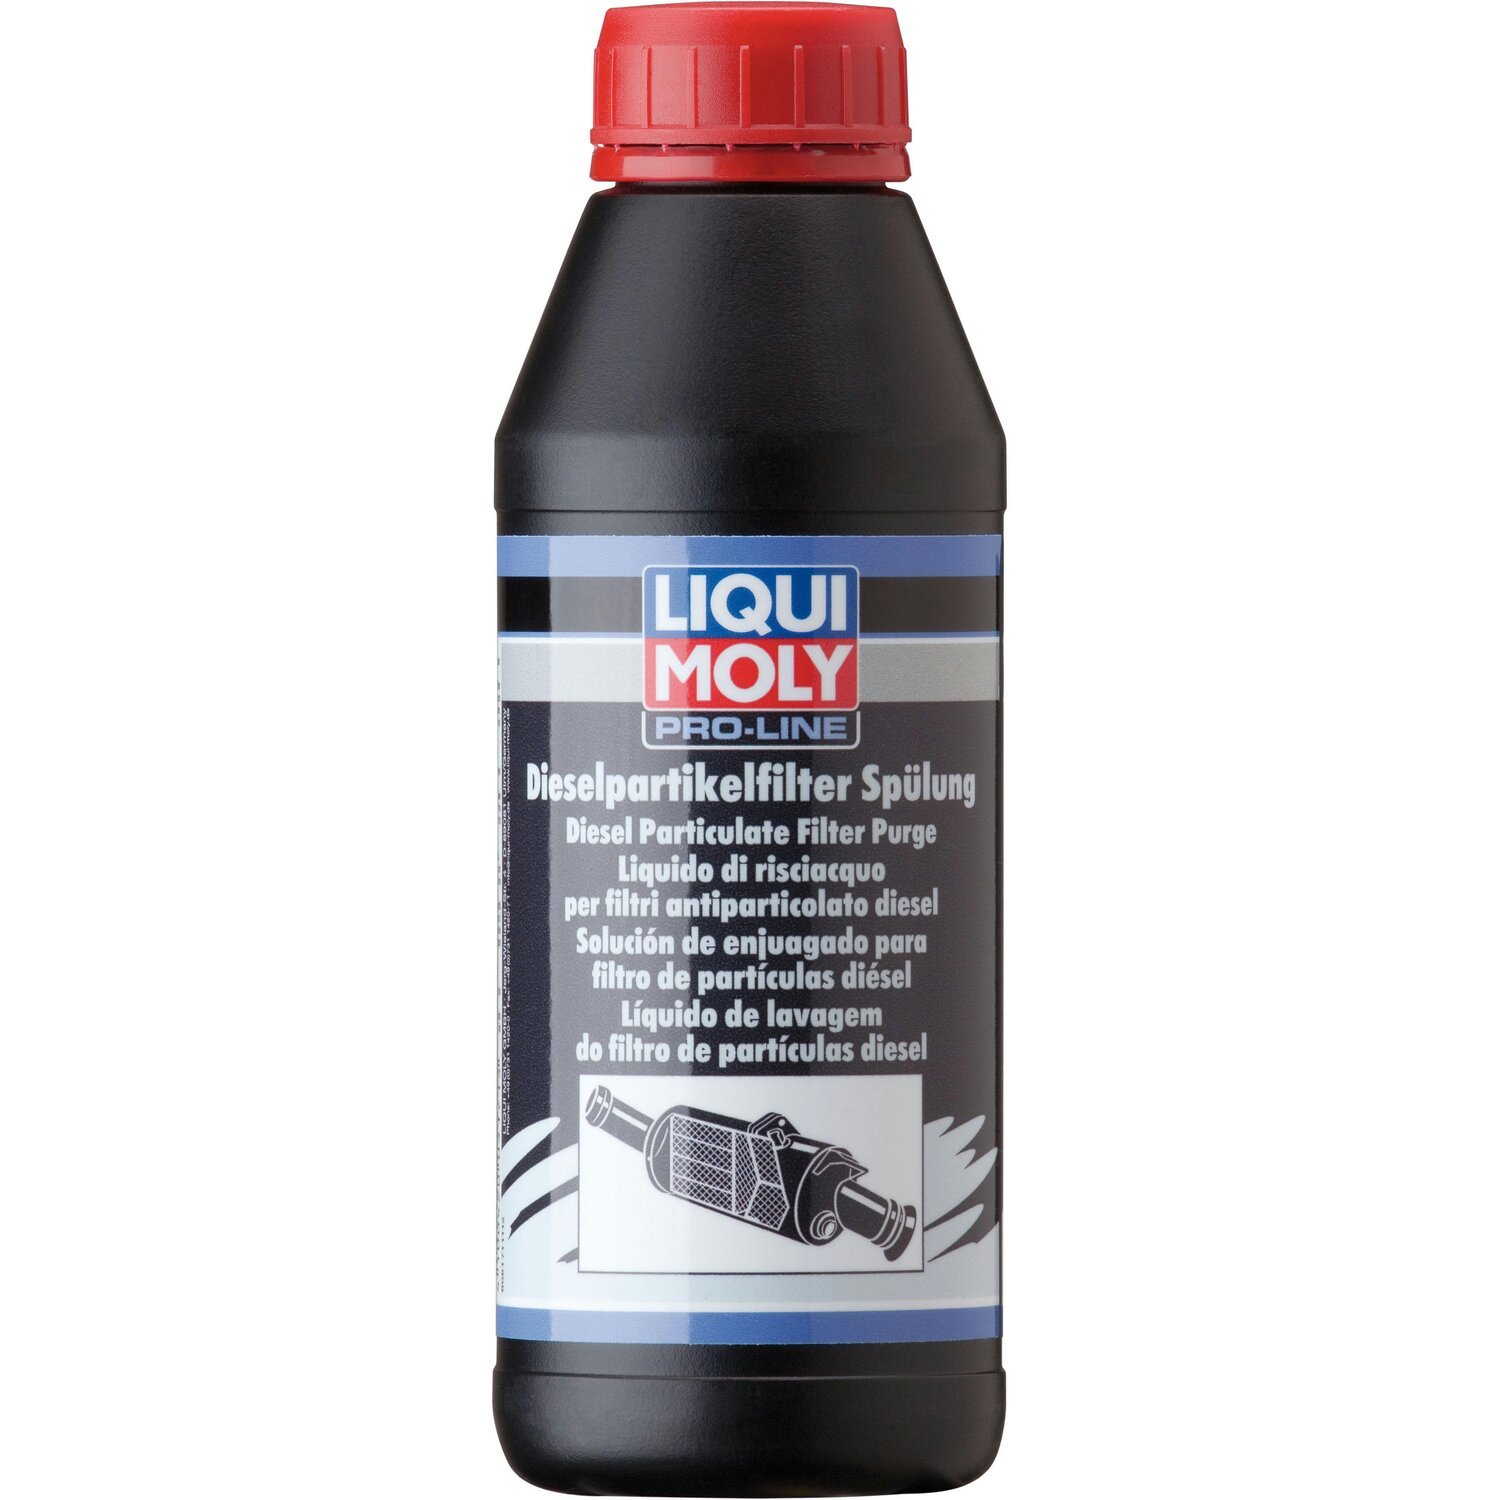 Очисник Liqui Moly для очищення фільтрів сажі (змивка) Pro-Line Dpf Spulung 0,5л (4100420051715)фото